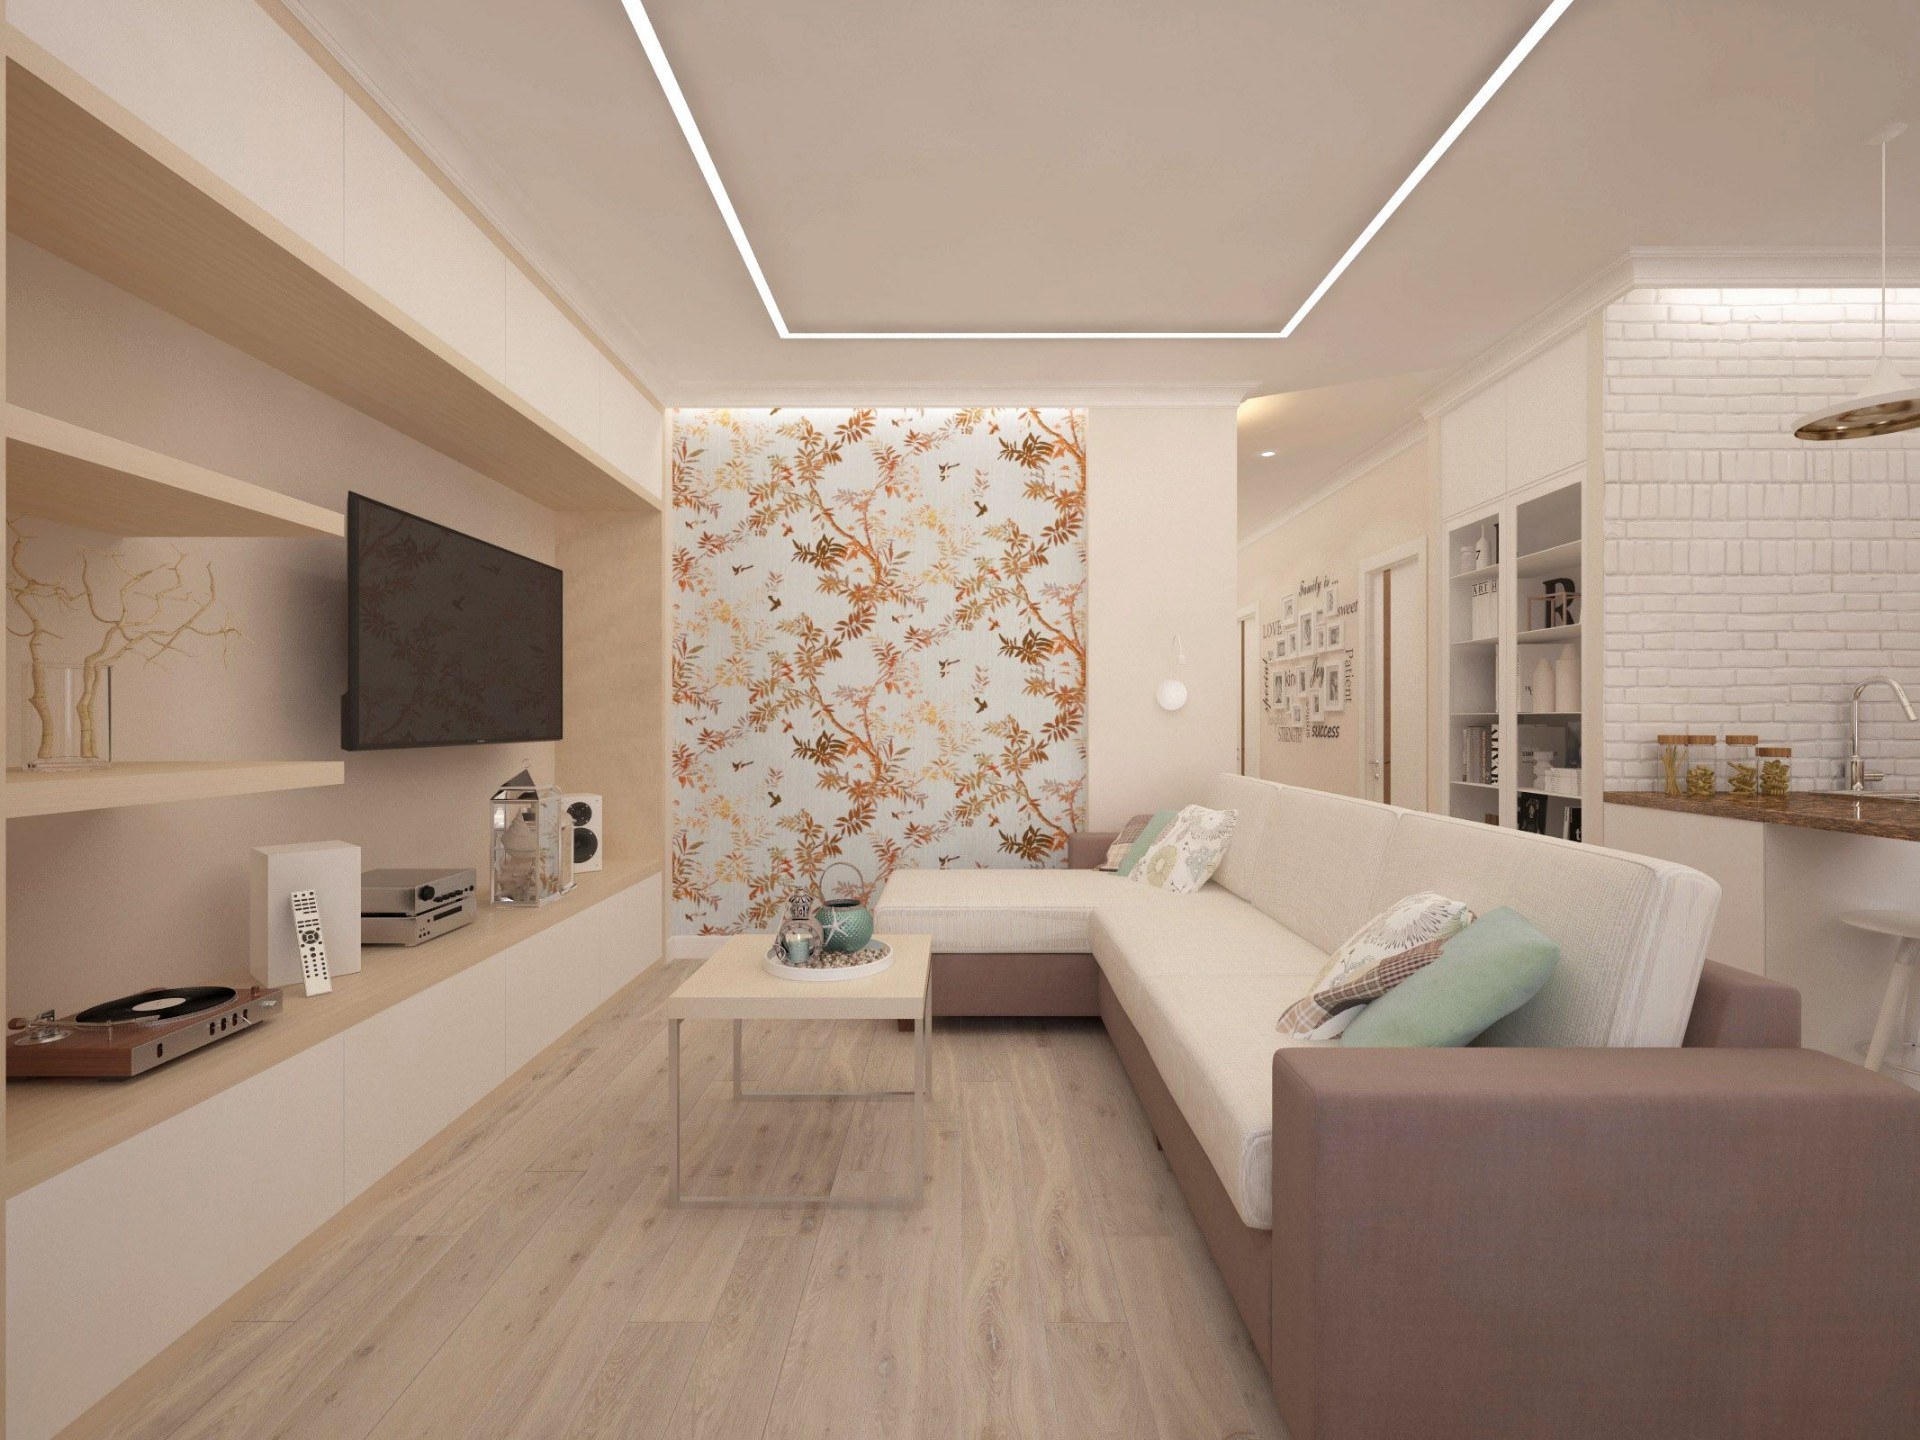 Дизайн квартиры в светлых тонах фото однокомнатной квартиры